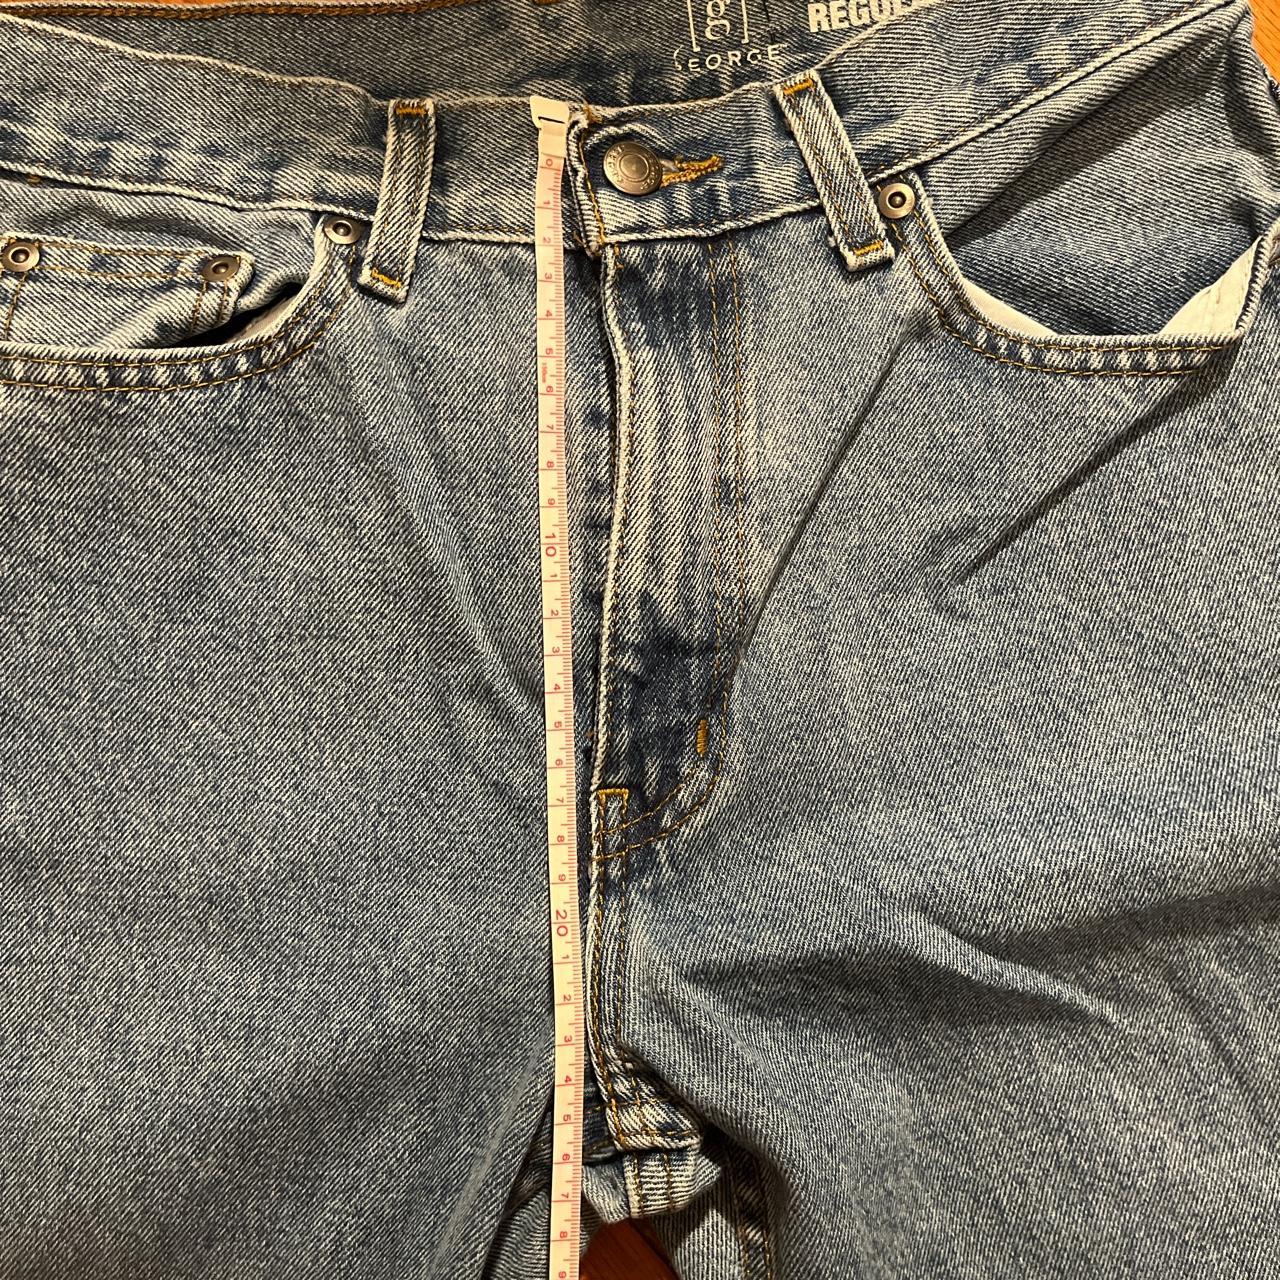 vintage baggy mens jeans size 29*30 waist like 34 cm - Depop